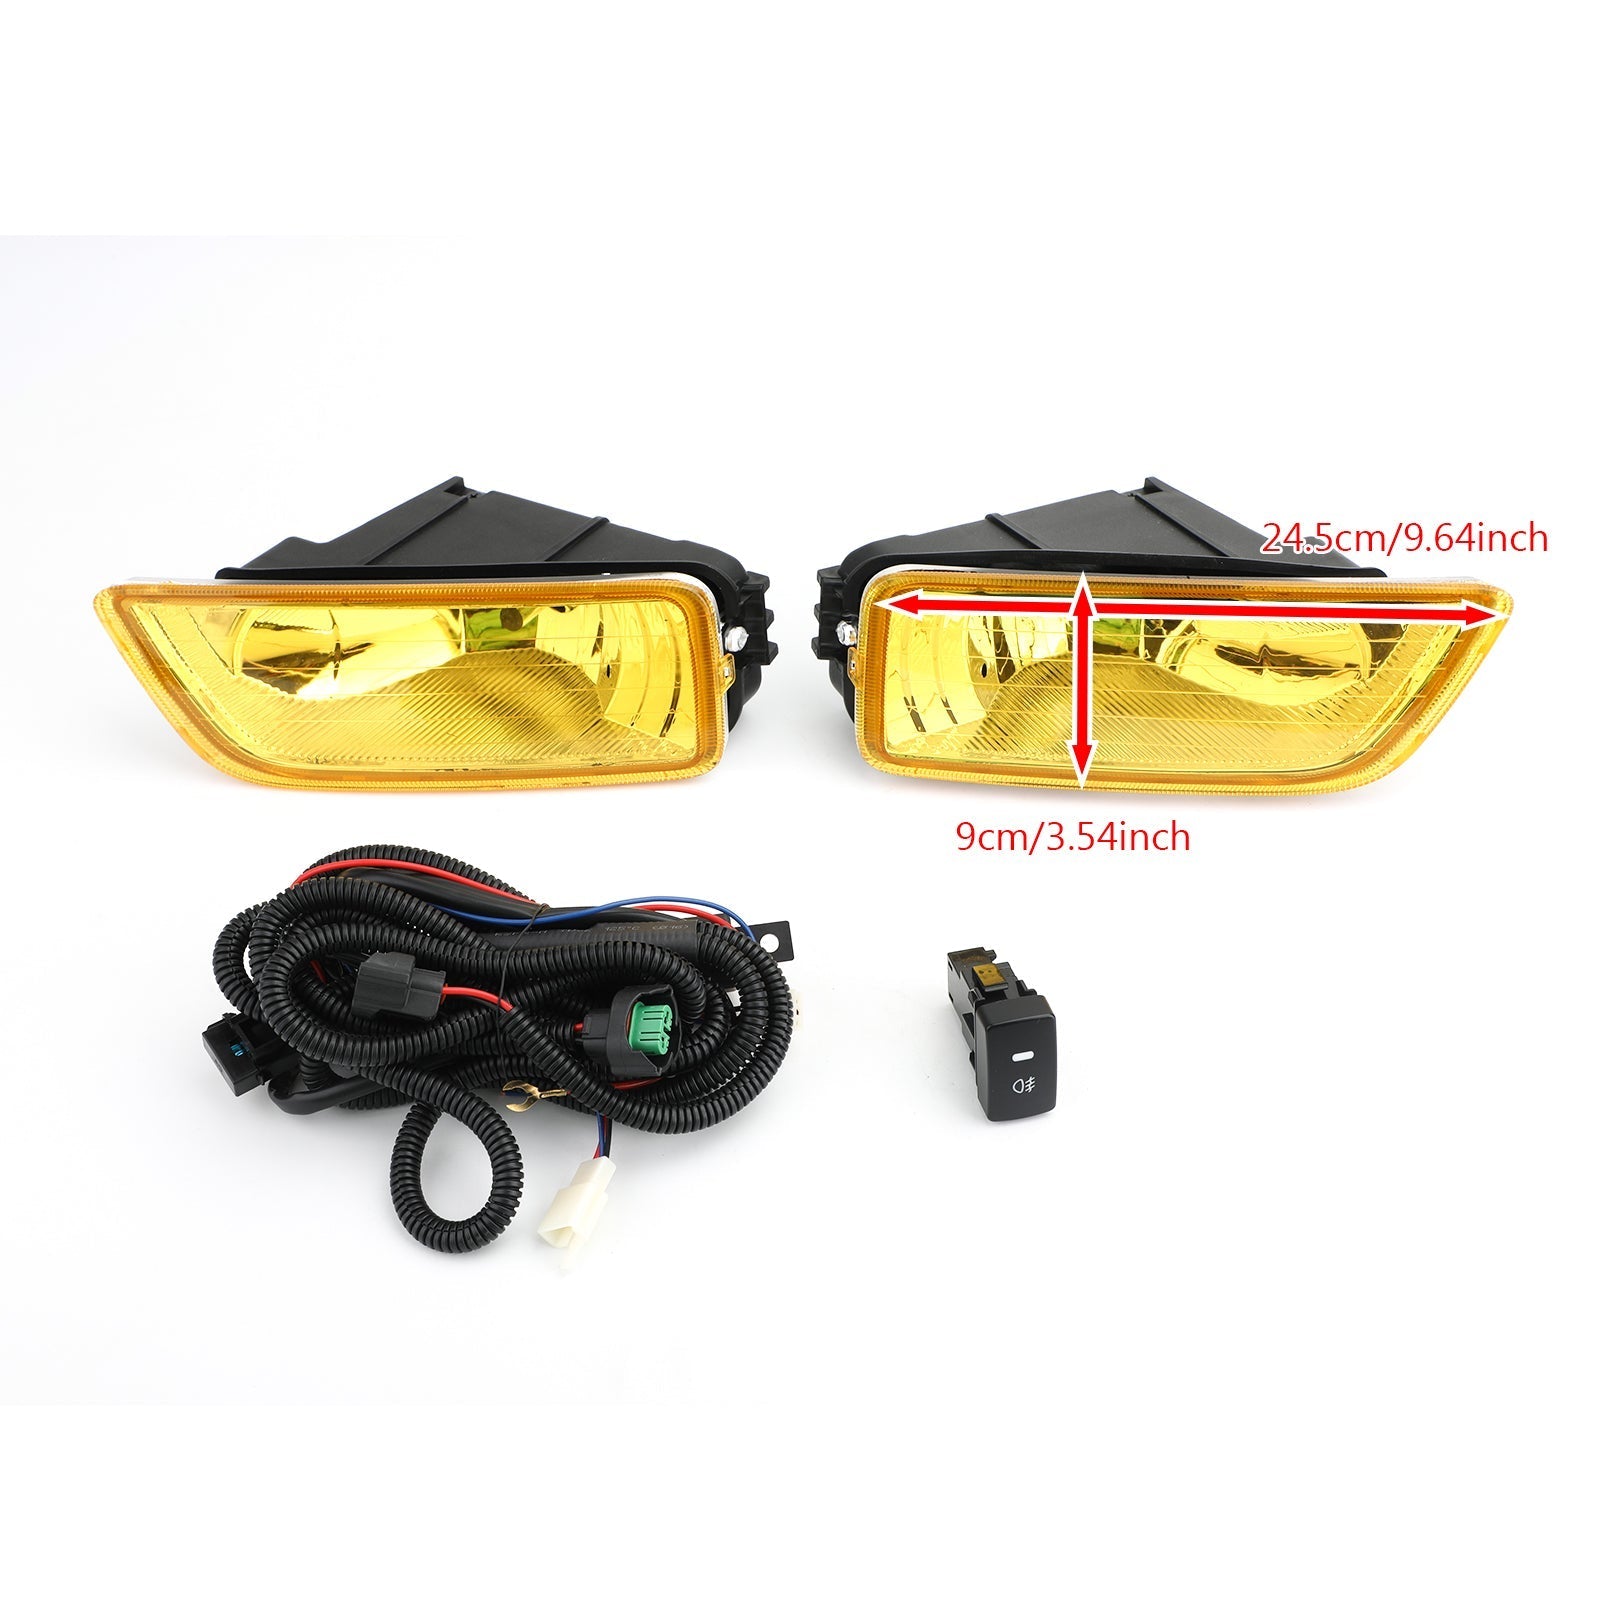 Phares antibrouillard à lentille jaune + interrupteur pour Honda Accord 2003-2007 / Acura TL 2004-2008 générique